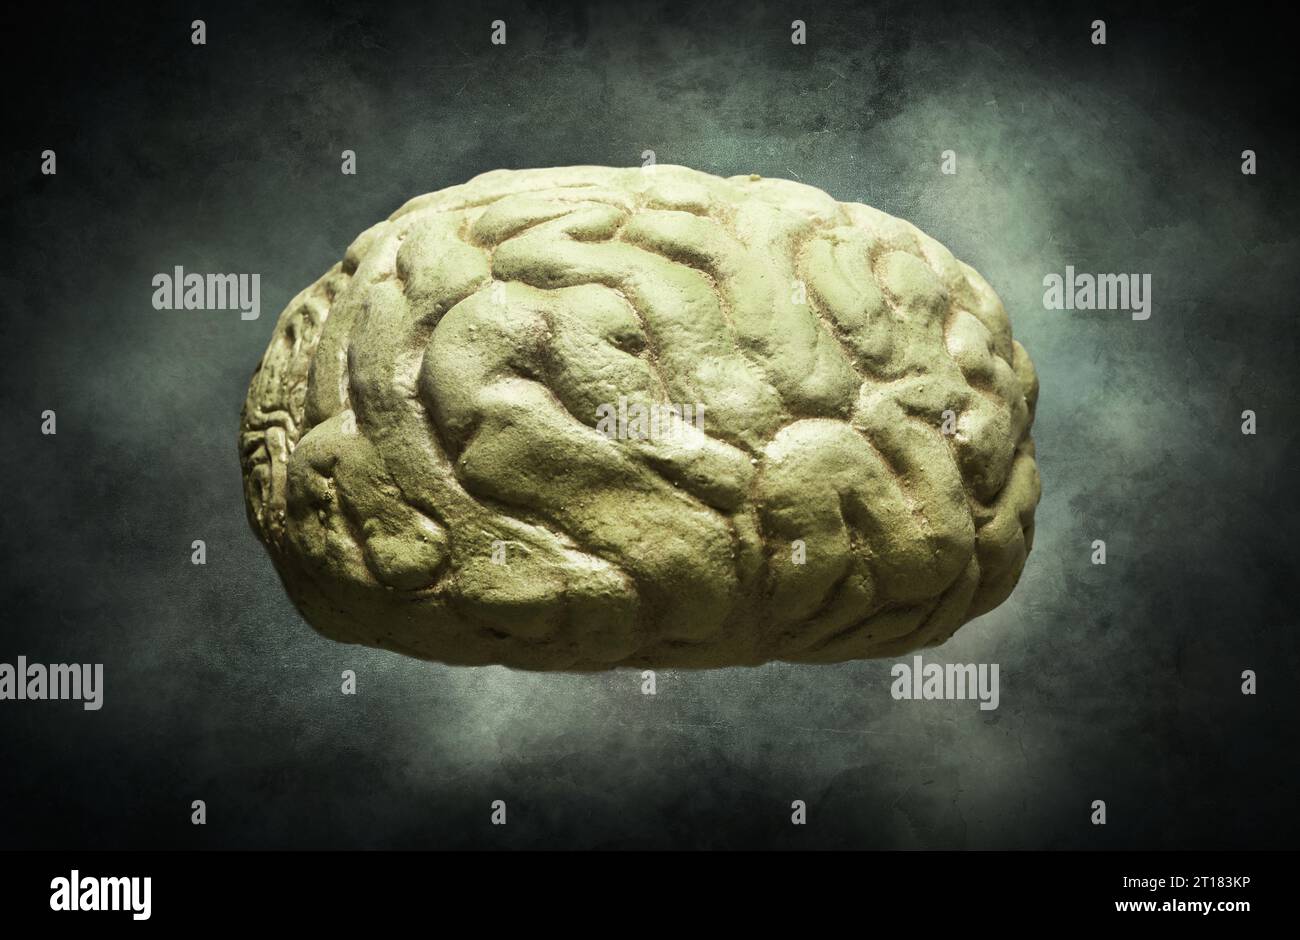 FOTOMONTAGE, Menschliches Gehirn Foto Stock